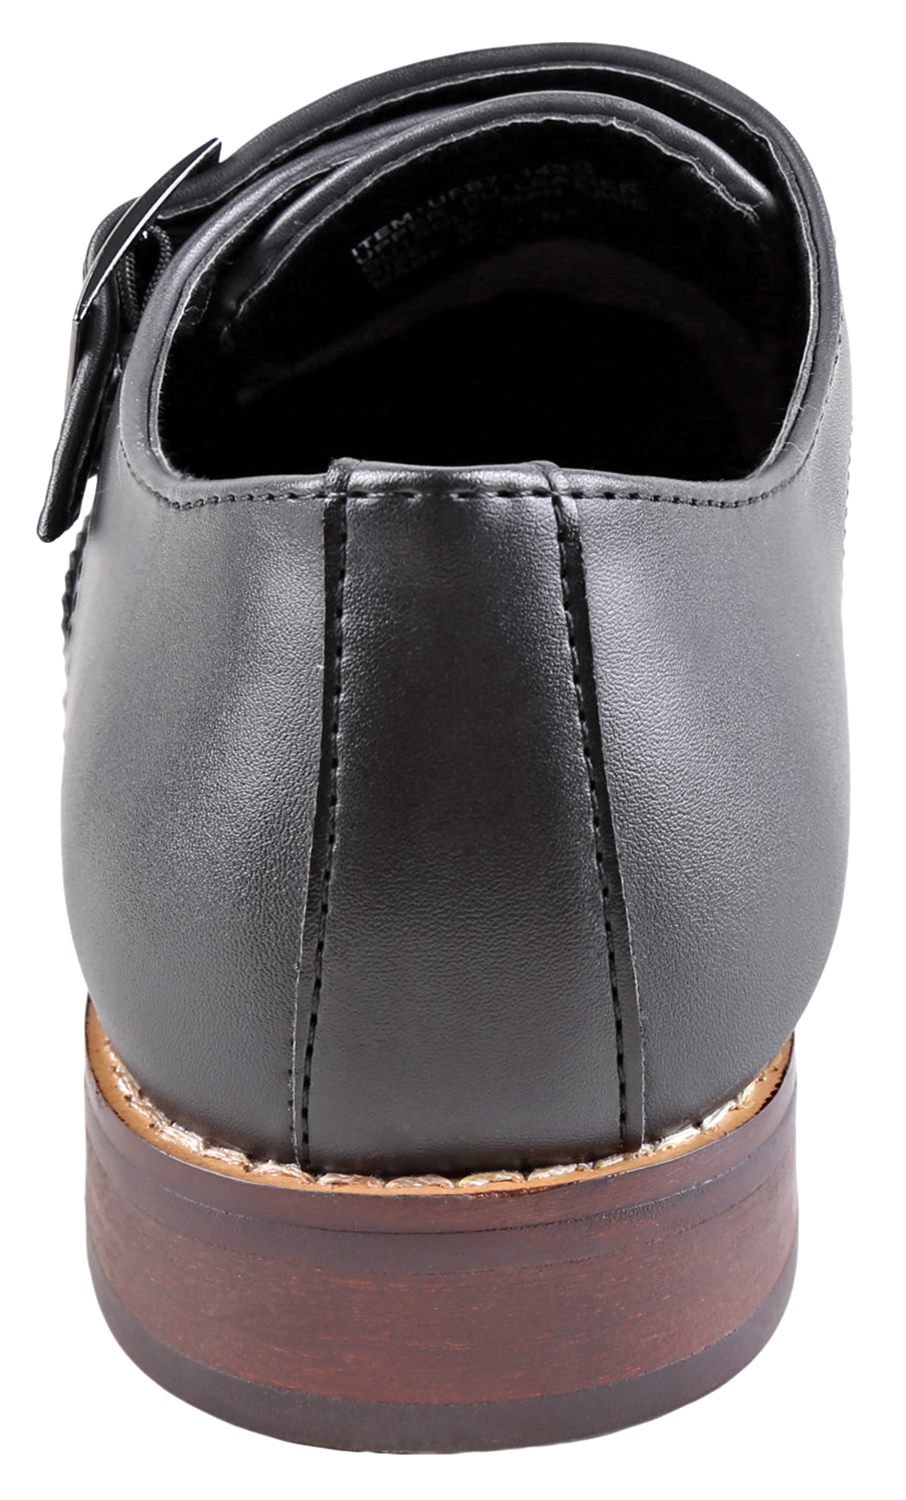 Urban Fox Allen Men's Dress Shoe | Double Monk Strap | Brogue | Wingtip Shoes for Men | Black 12 M US - image 4 of 7